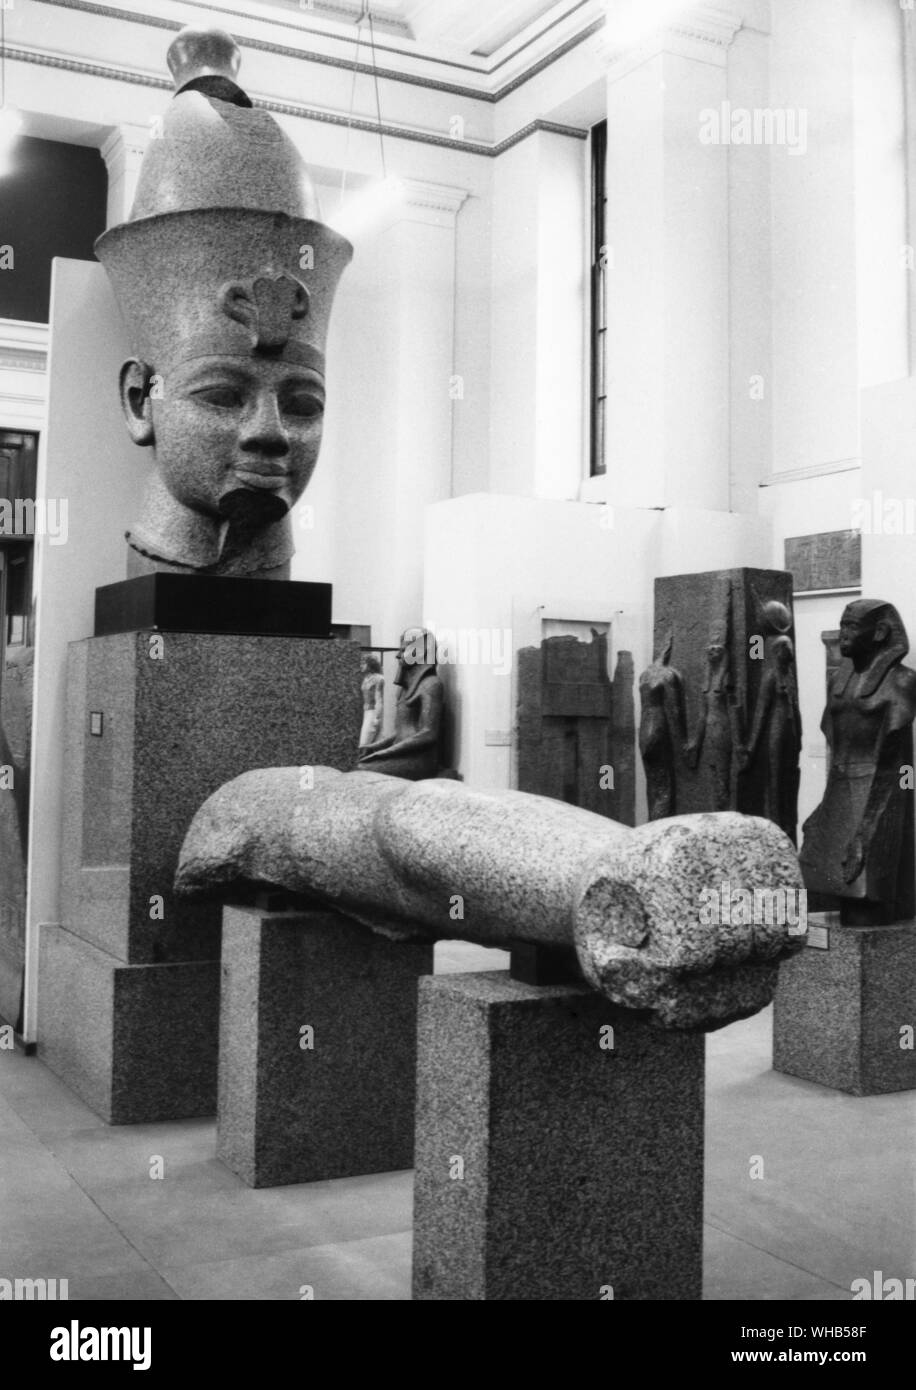 Kopf und Arm in rotem Granit eines kolossalen Statue von Tuthensis III von Karnak - British Museum - Thutmose III (manchmal lesen wie Thutmosis oder Thutmosis III und Bedeutung Thoth geboren ist) war der sechste Pharao der achtzehnten Dynastie. Während der ersten 22 Jahre des Thutmose Herrschaft war er - Regent mit seiner Stiefmutter Hatschepsut. Während sie zuerst auf überlebende Denkmäler dargestellt, und zwar sowohl die üblichen königlichen Namen und Insignia zugewiesen und auch offensichtliche Dienstalter über den anderen gegeben. Nach ihrem Tod und seine anschließende Verstärkung der Macht in seinem Königreich, er schuf das größte Reich Ägypten hatten Stockfoto